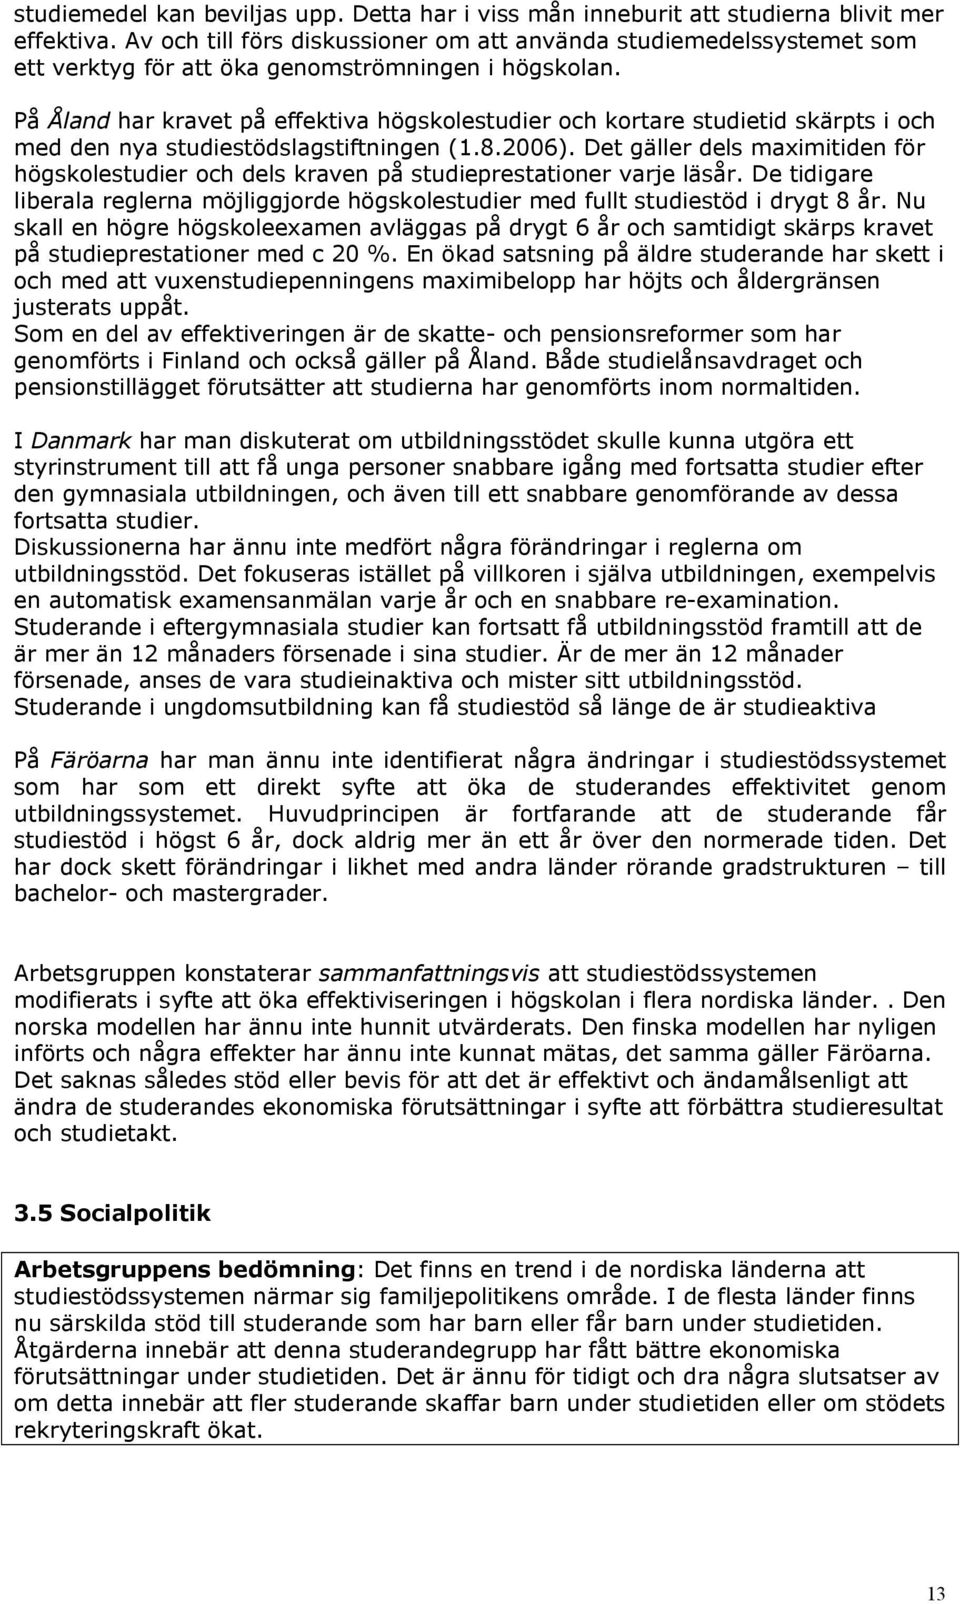 På Åland har kravet på effektiva högskolestudier och kortare studietid skärpts i och med den nya studiestödslagstiftningen (1.8.2006).